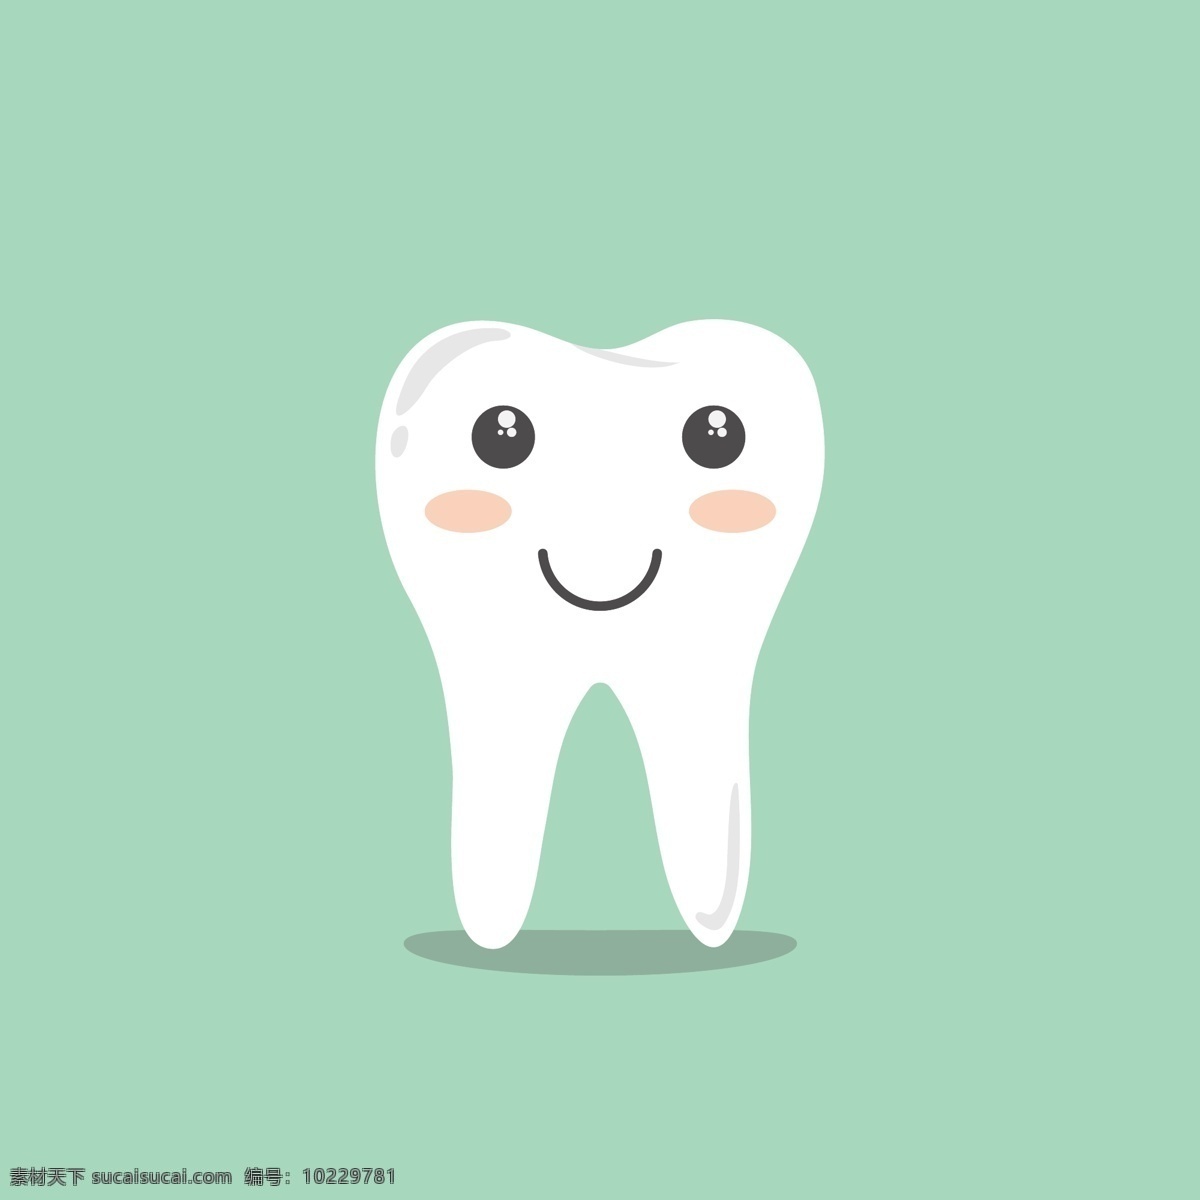 牙齿 卡通 生 清洗 牙科 图 医疗保健 医疗 牙 牙刷 牙医 医药 图标 徽标 标志图标 其他图标